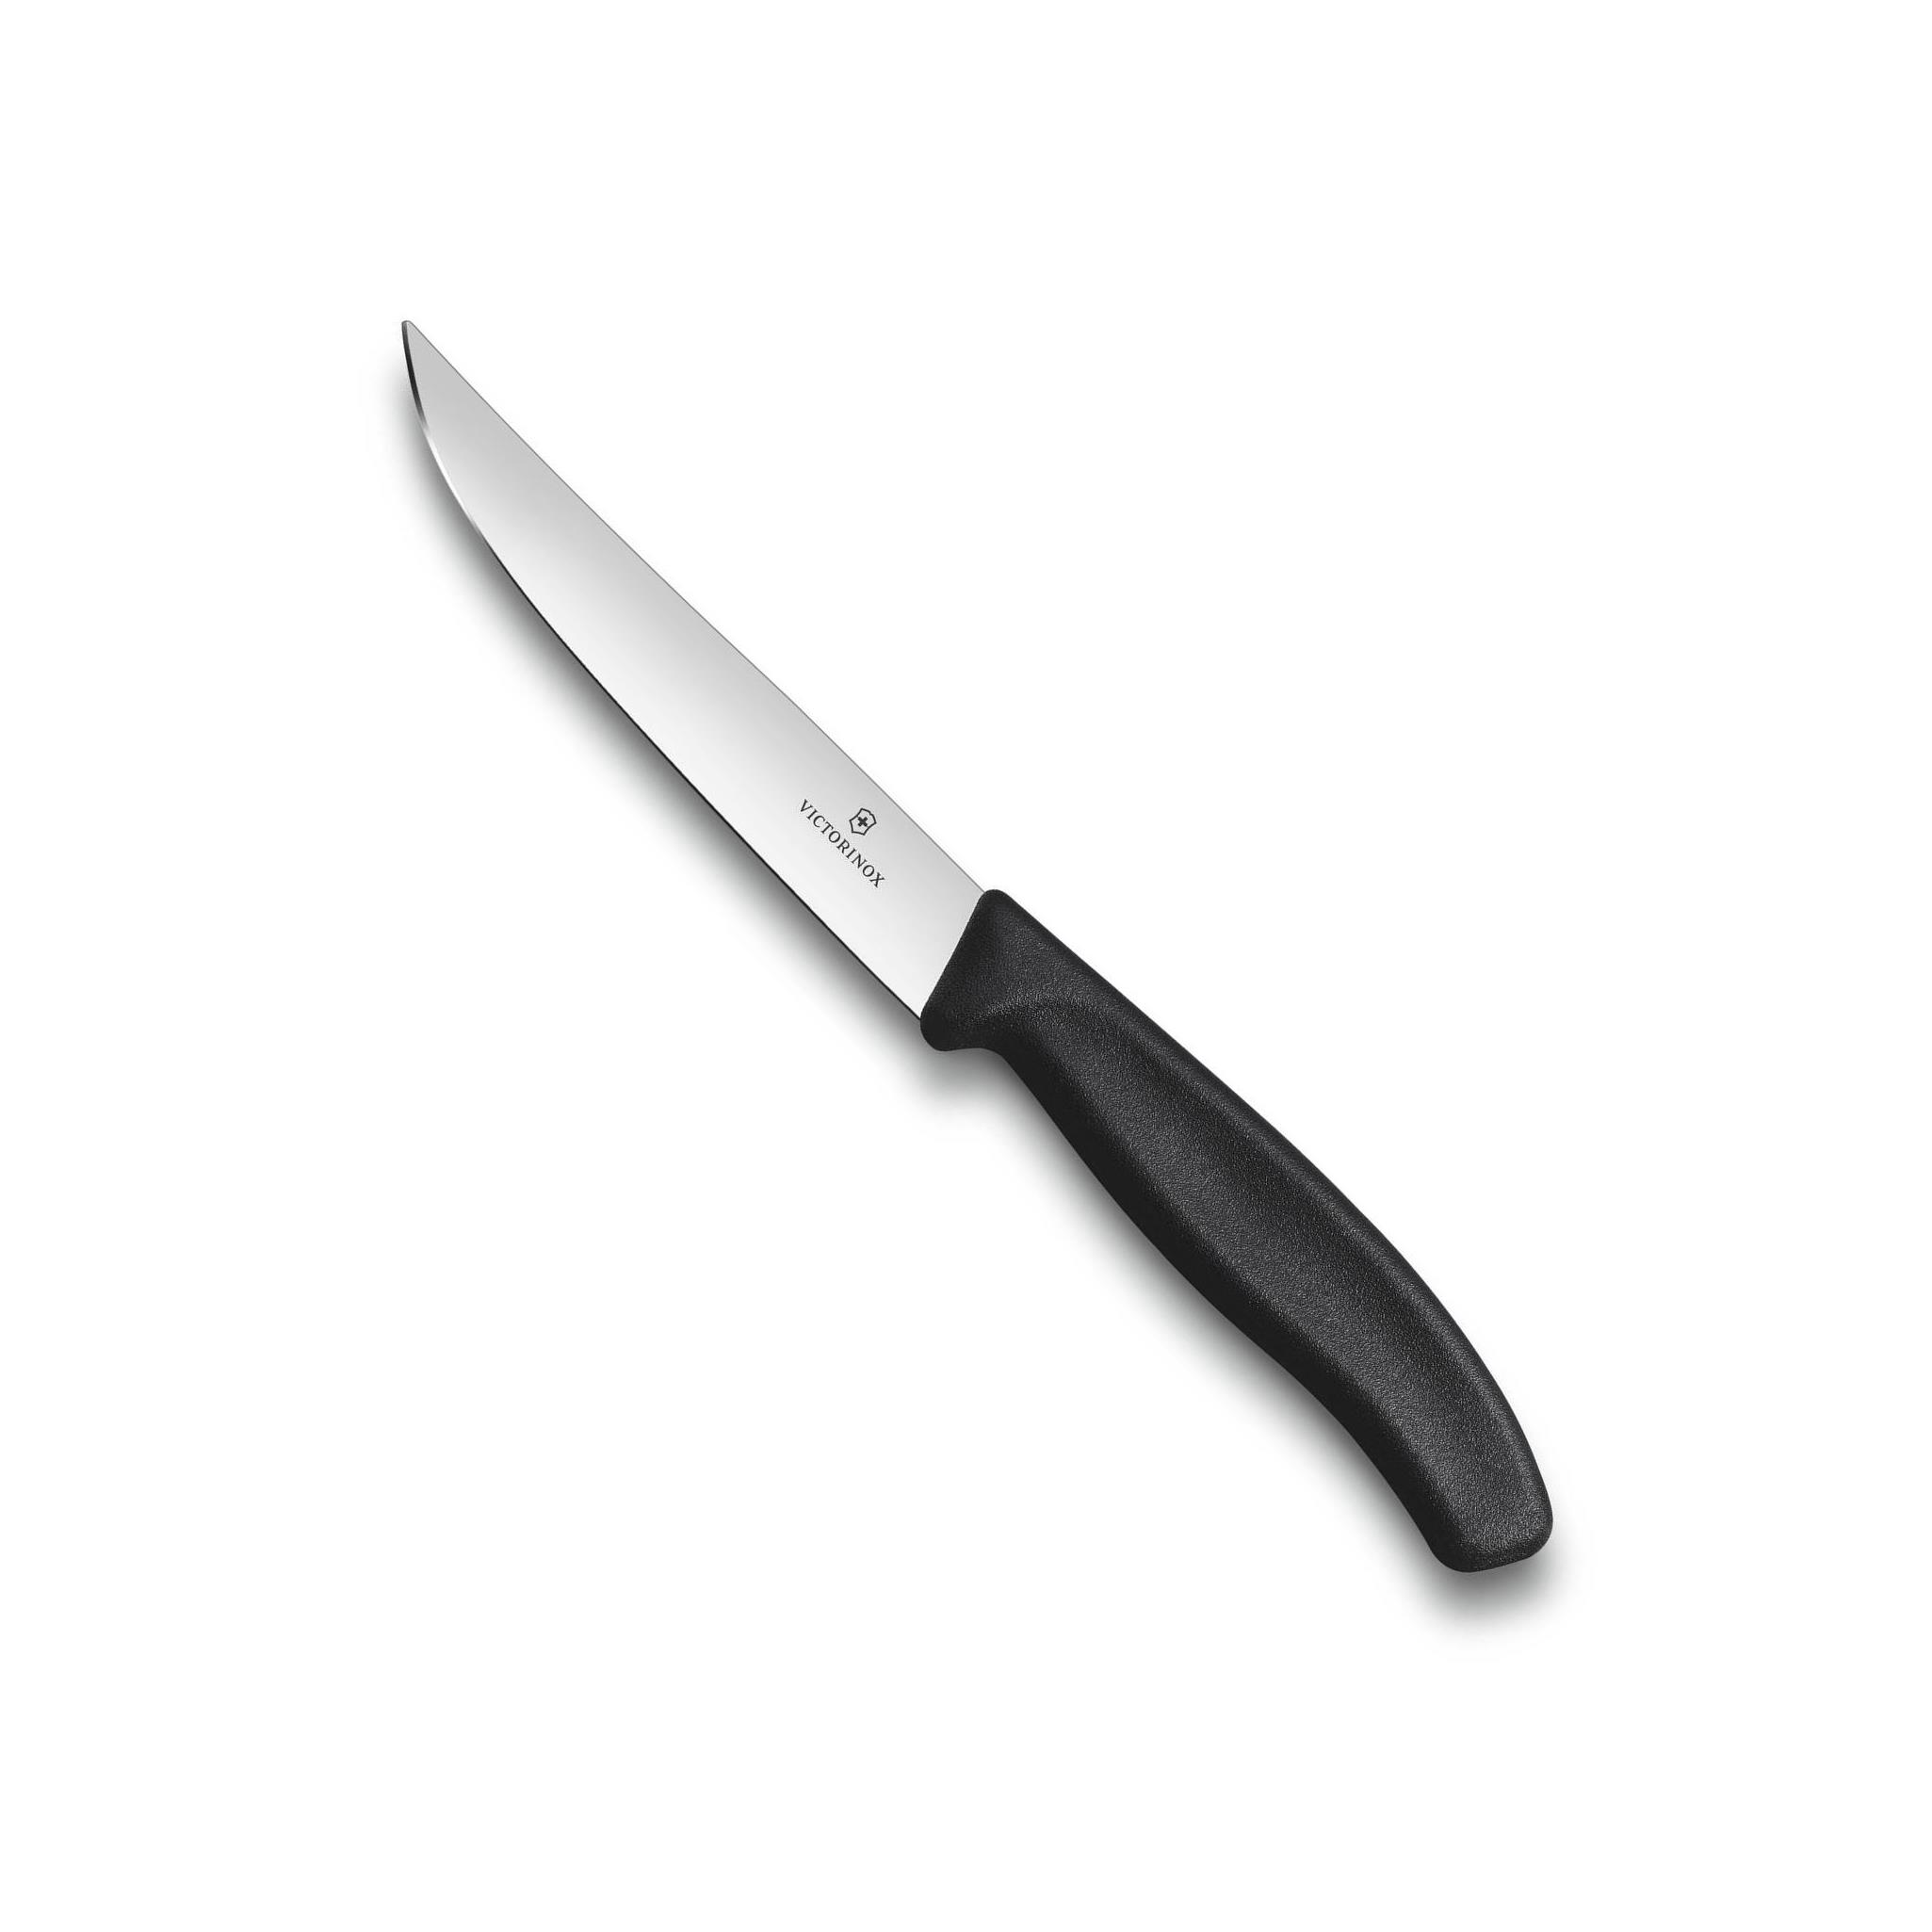 Nůž na steak SWISS CLASSIC 12 cm černý - Victorinox